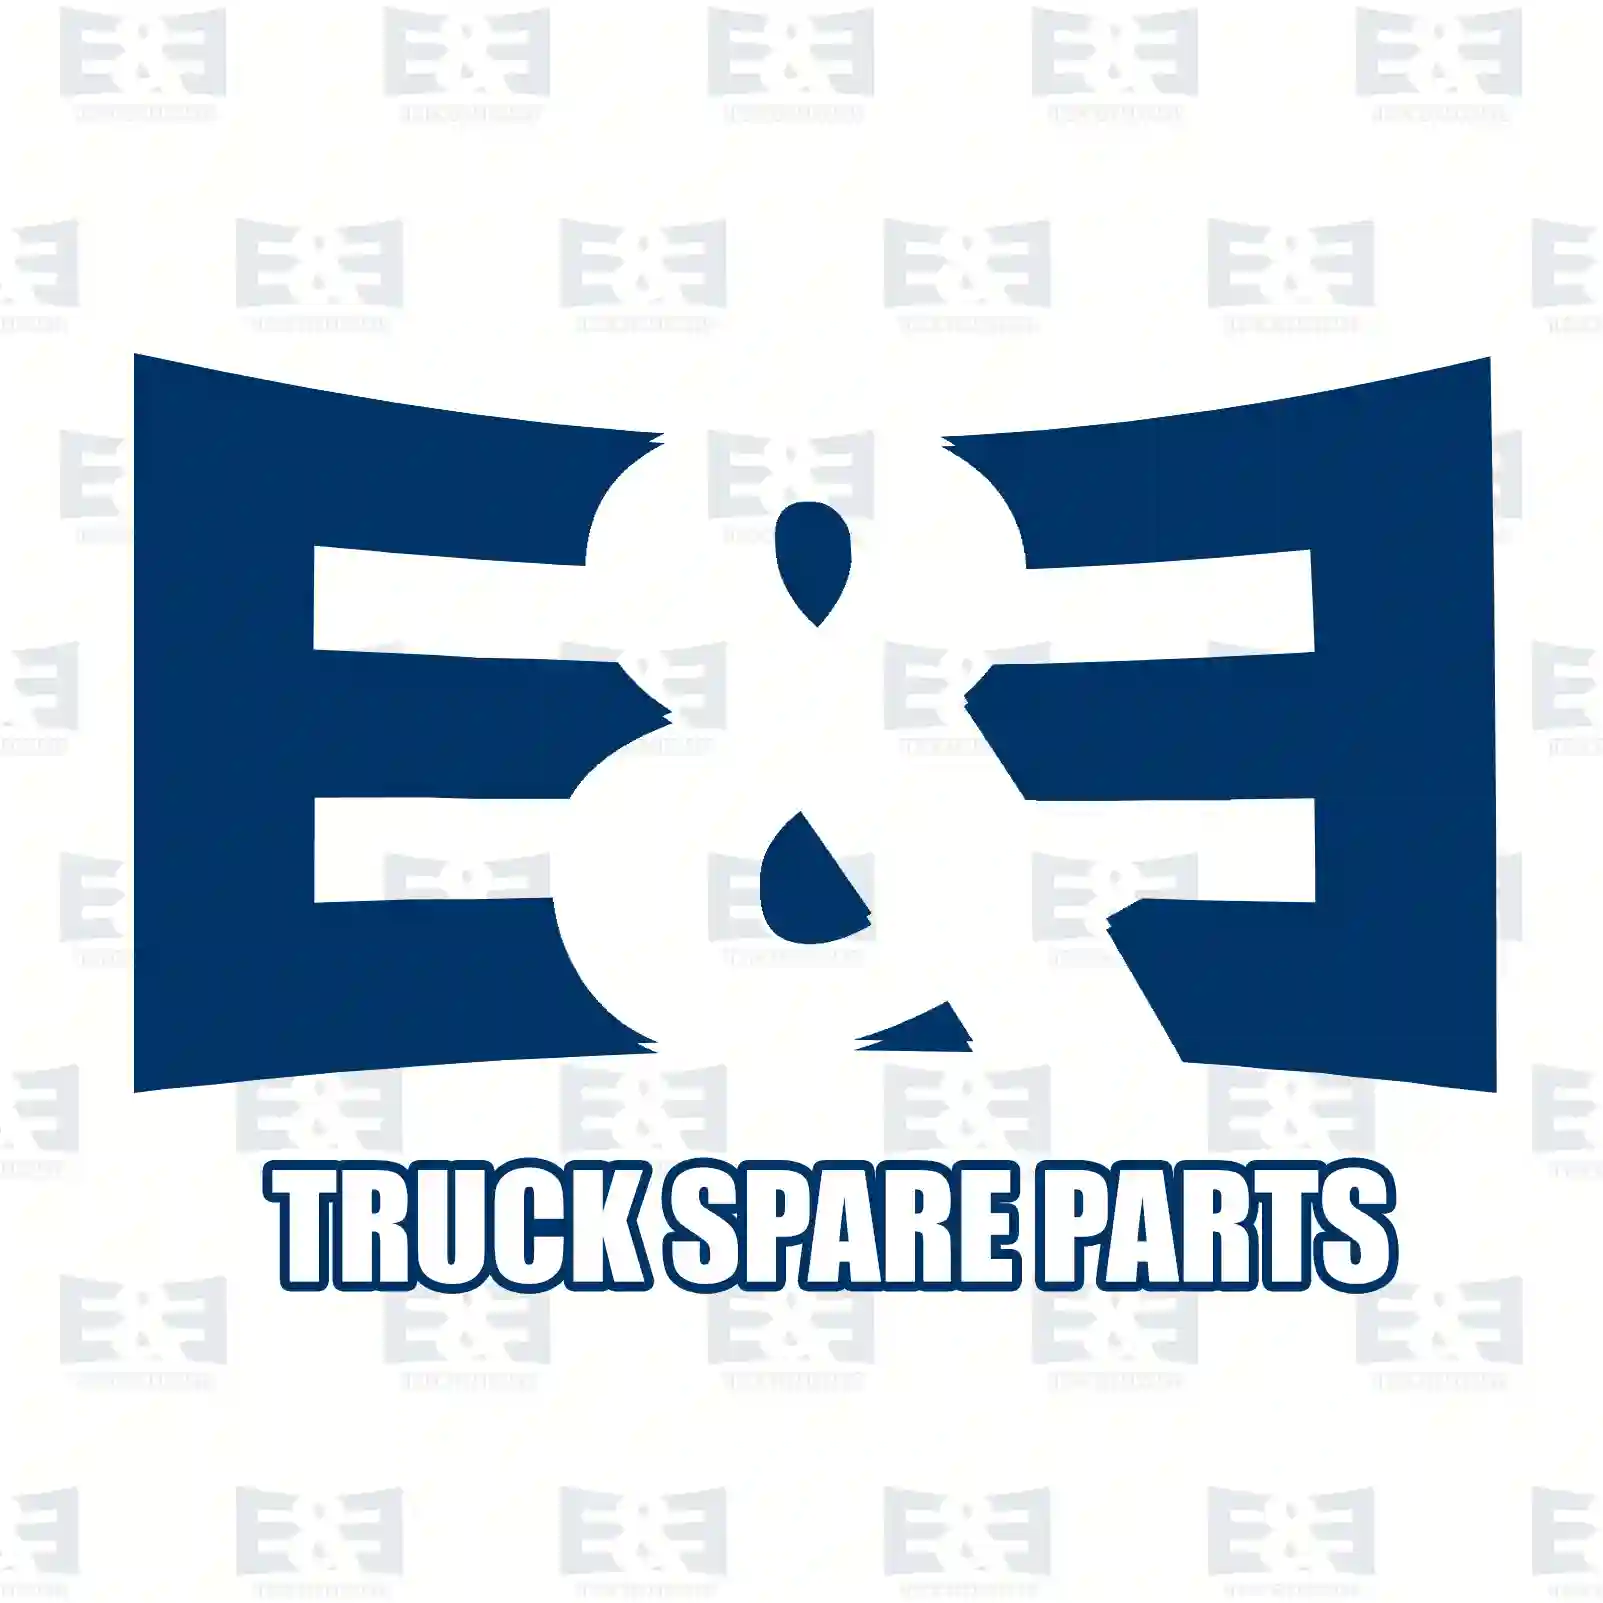 Cabin air filter, 2E2276586, 36779106005, 36779106006, 81779100020, 0018357047, 0028351347, 0028351847, 1914804, 1923323, 1101891A, 1101891A, 1101891A, 1102618B, 22361133, 22739958 ||  2E2276586 E&E Truck Spare Parts | Truck Spare Parts, Auotomotive Spare Parts Cabin air filter, 2E2276586, 36779106005, 36779106006, 81779100020, 0018357047, 0028351347, 0028351847, 1914804, 1923323, 1101891A, 1101891A, 1101891A, 1102618B, 22361133, 22739958 ||  2E2276586 E&E Truck Spare Parts | Truck Spare Parts, Auotomotive Spare Parts